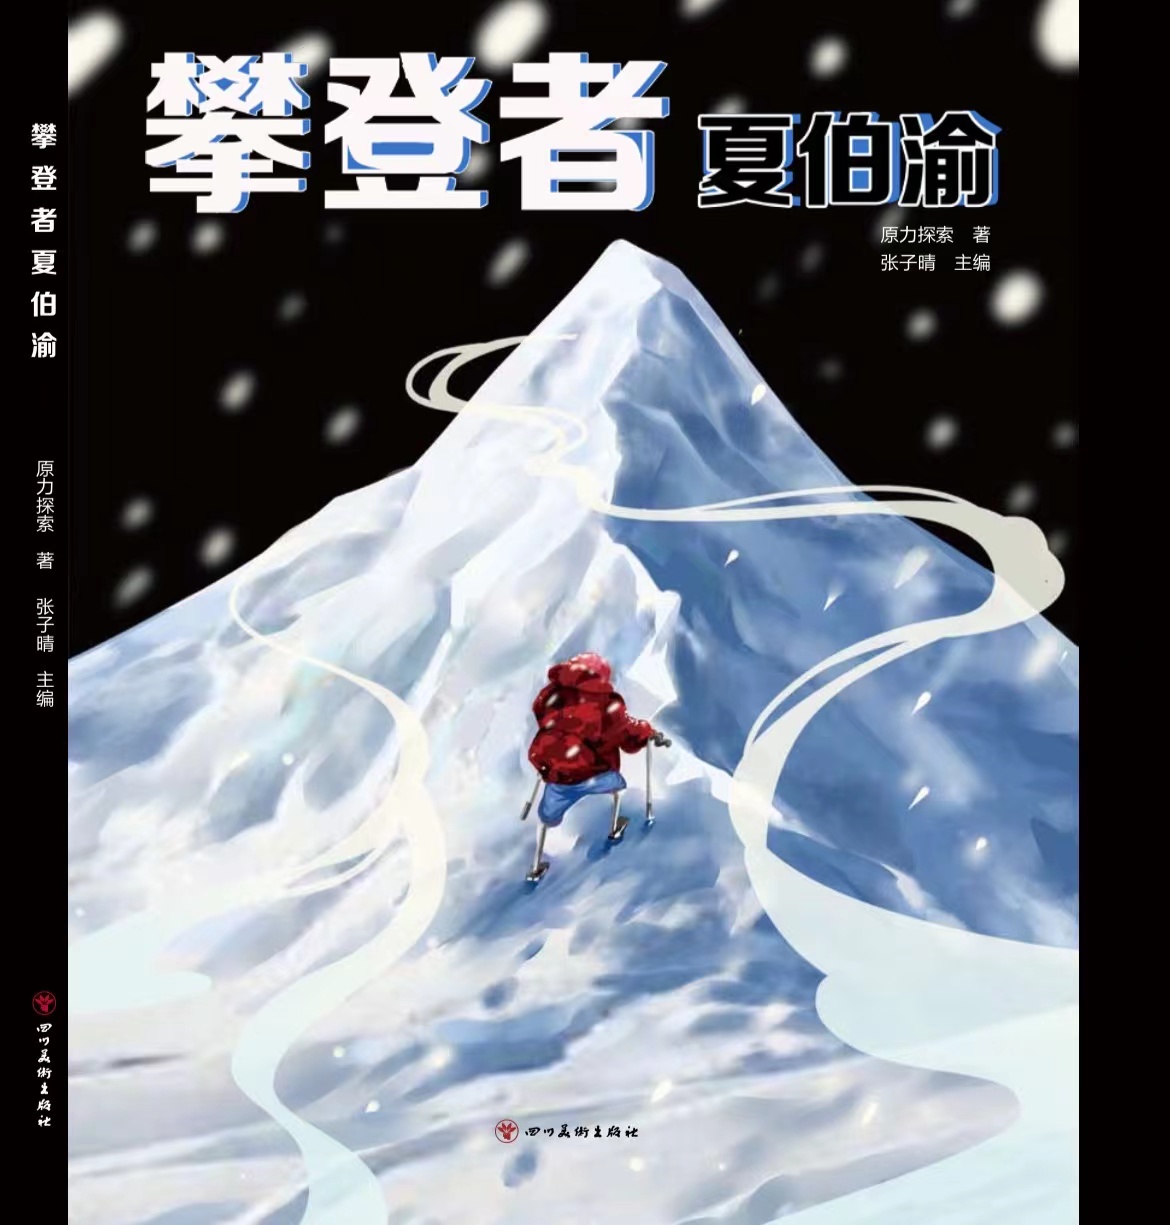 《攀登者夏伯渝》带你走进夏伯渝的攀登人生， 一本让你有梦想的书